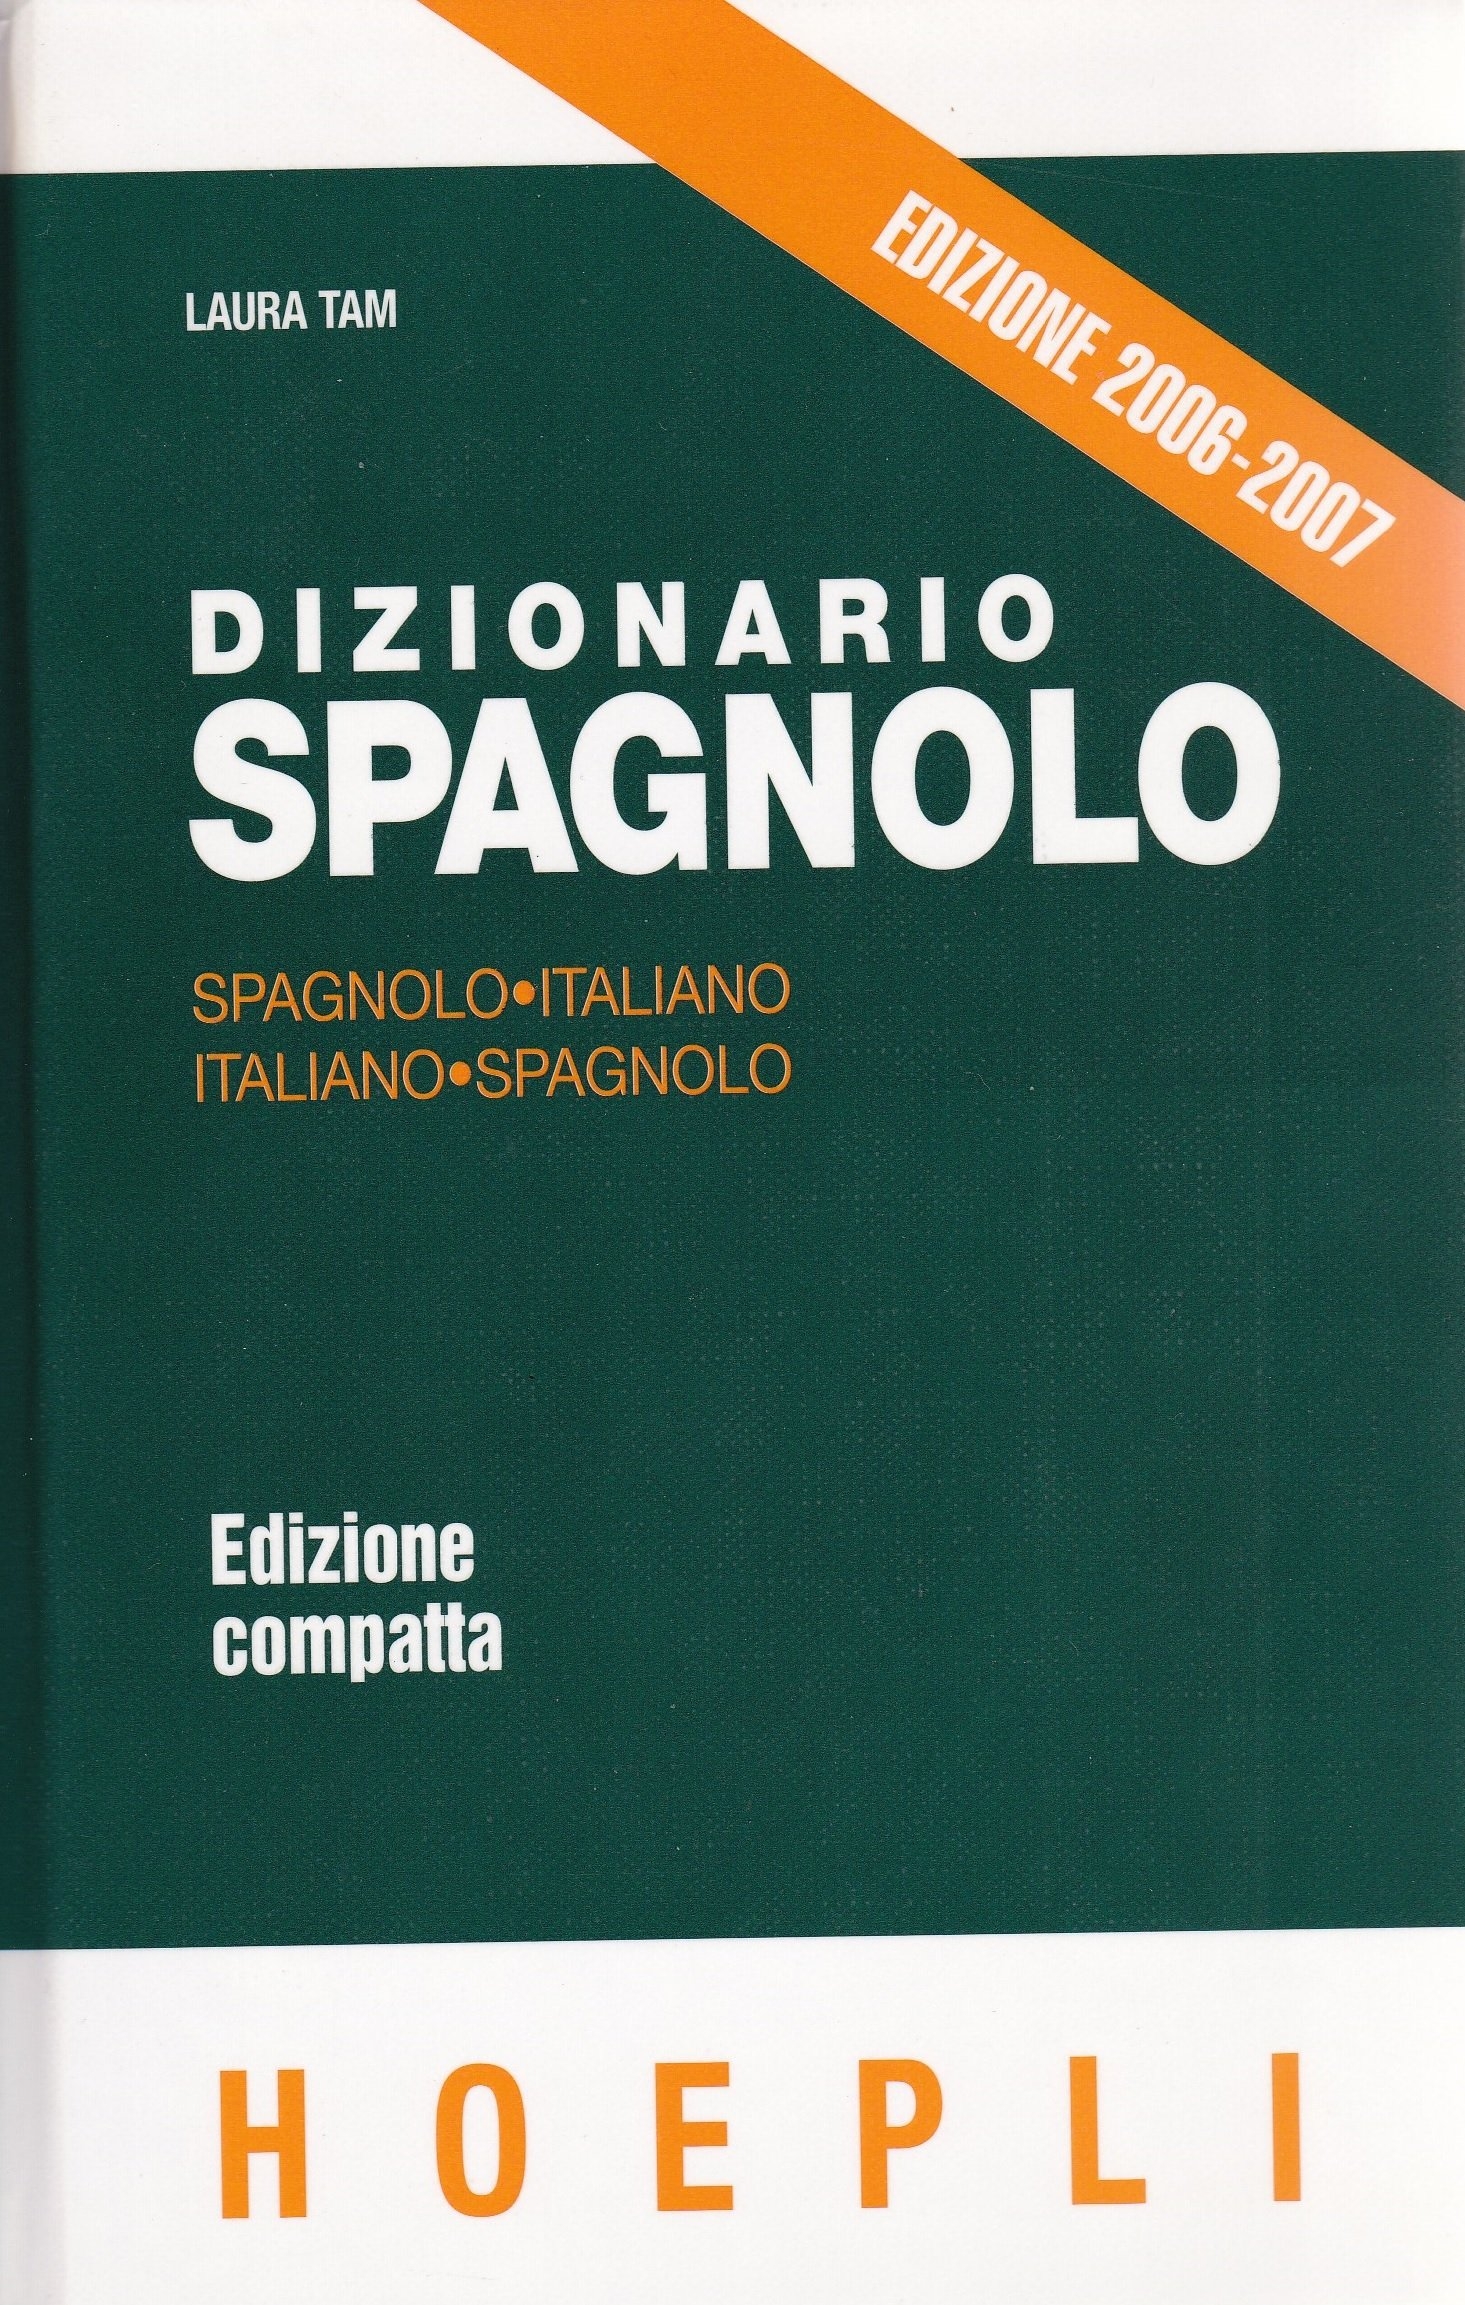 Dizionario spagnolo. Spagnolo-Italiano/Italiano-Spagnolo. Edizione  compatta. by Tam Laura: (2006)